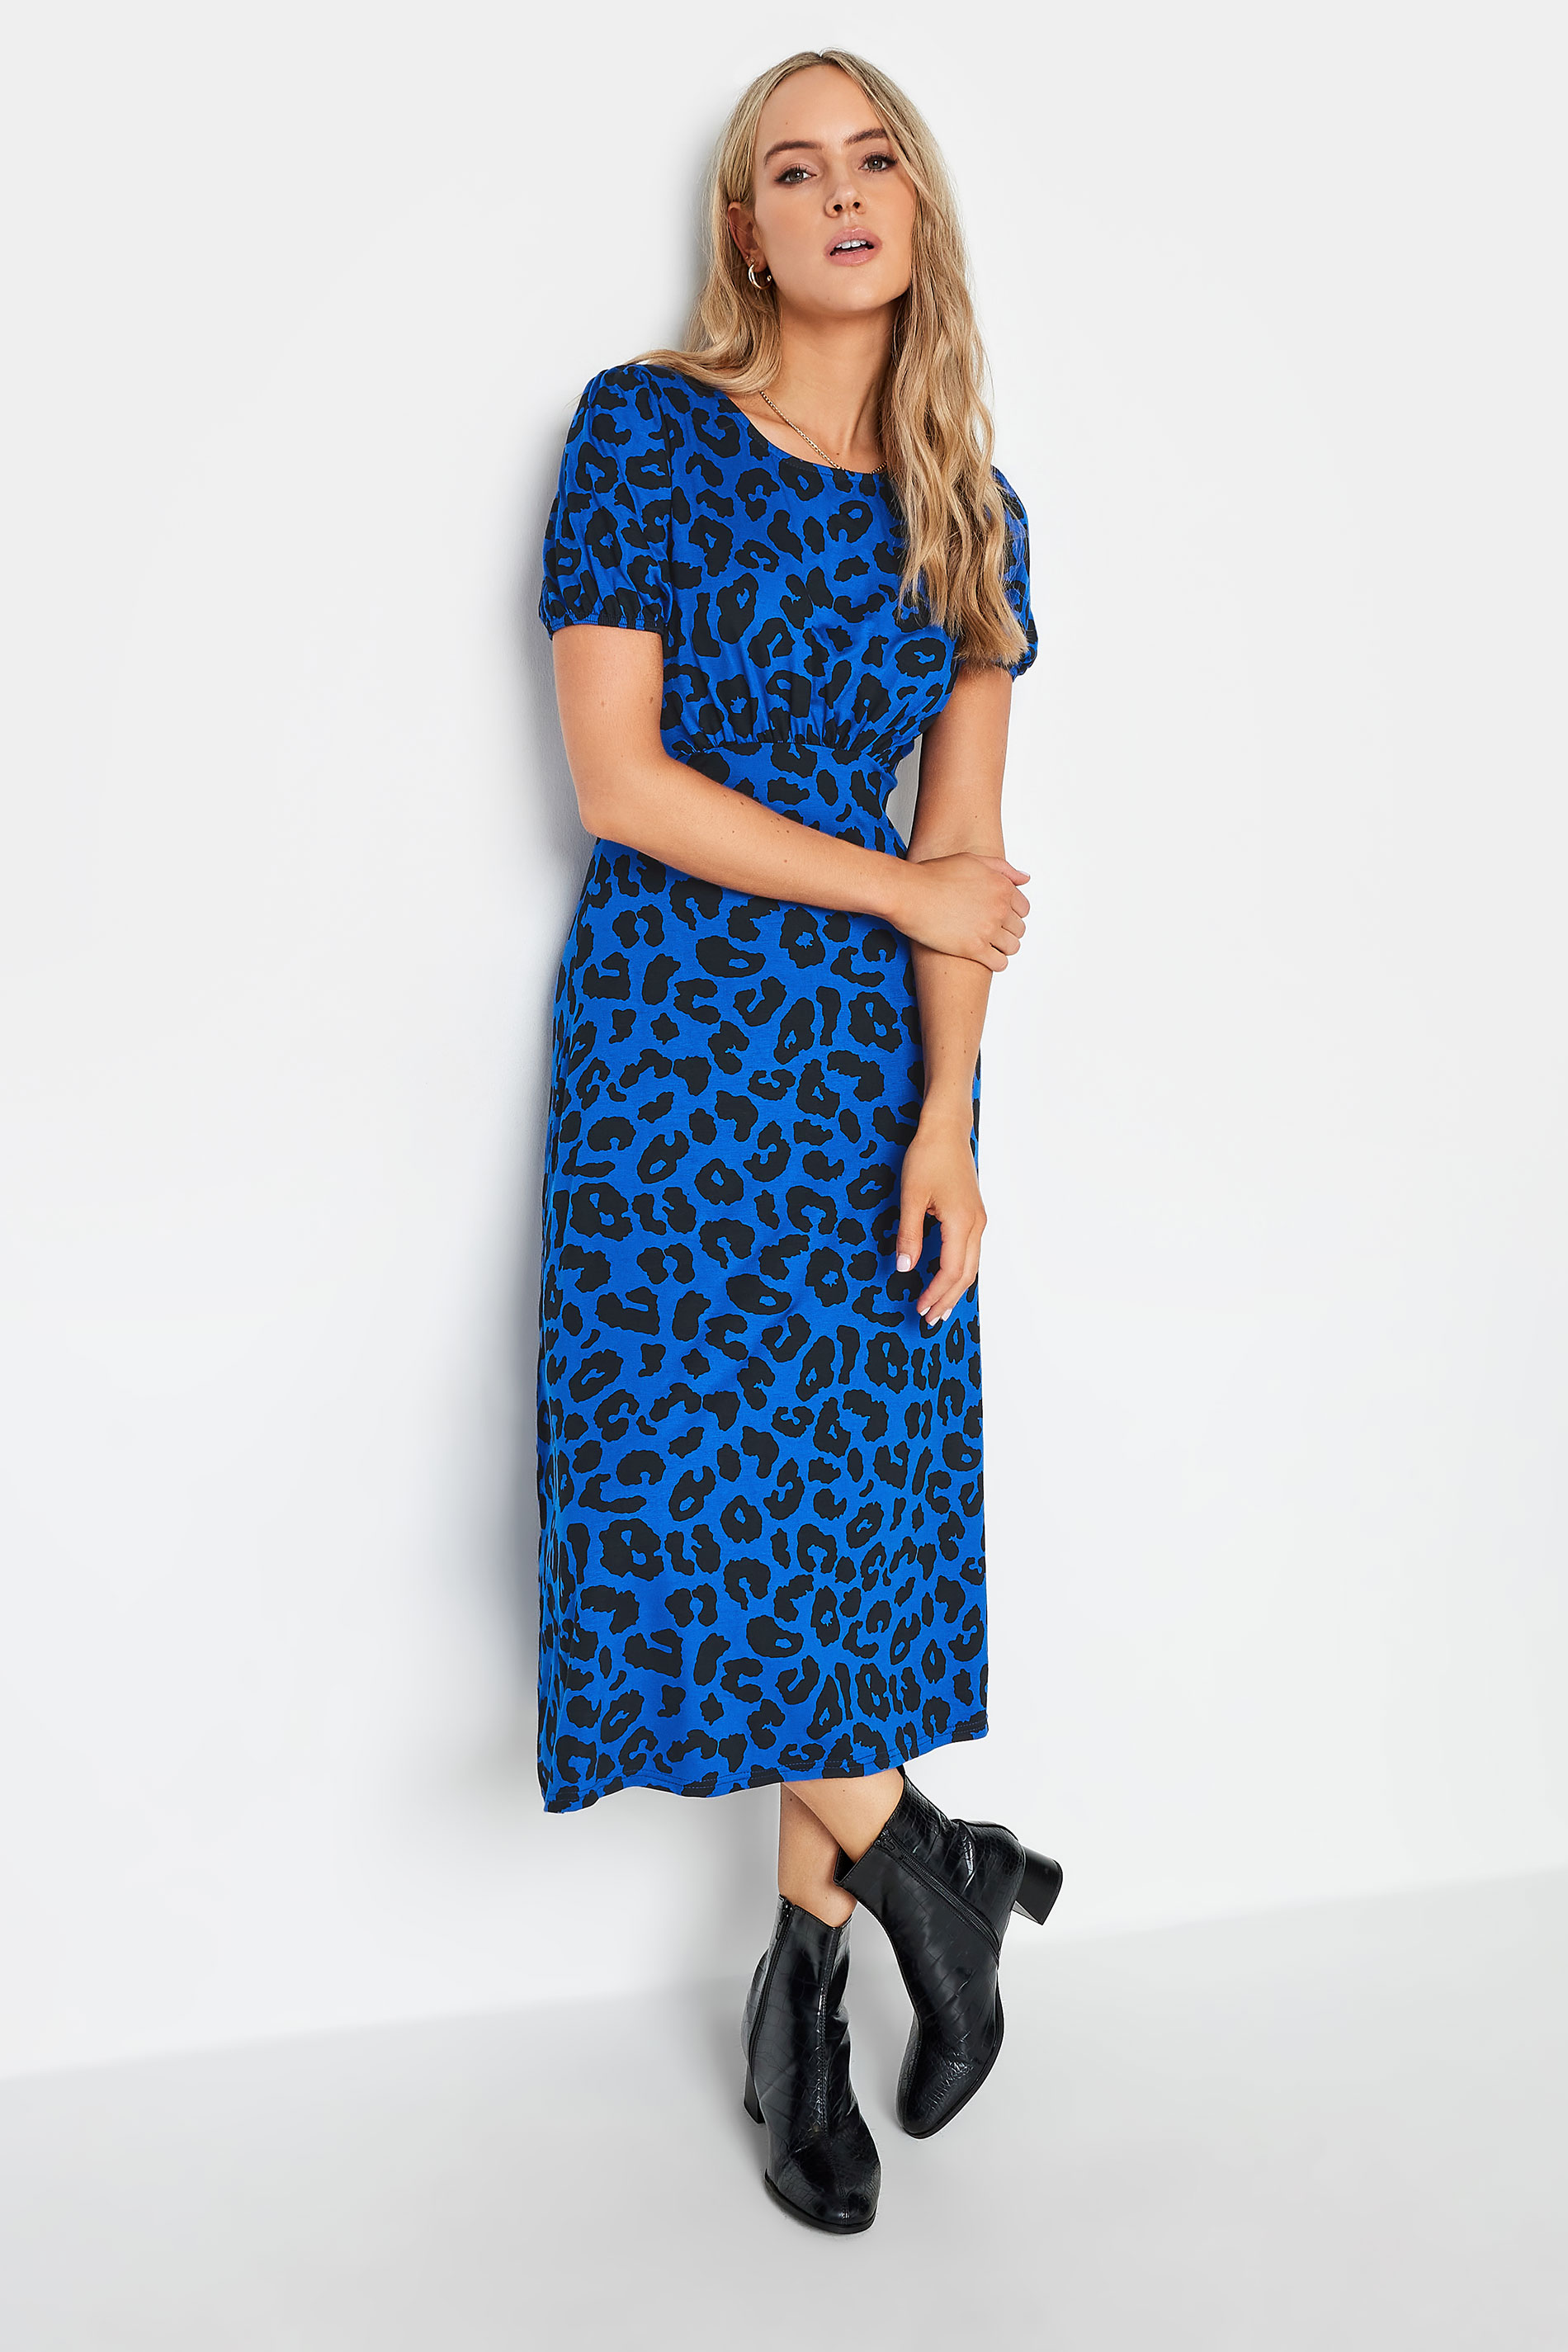 LTS Women's Tall Blue Animal Print Midi Tea Dress | Long Tall Sally 1